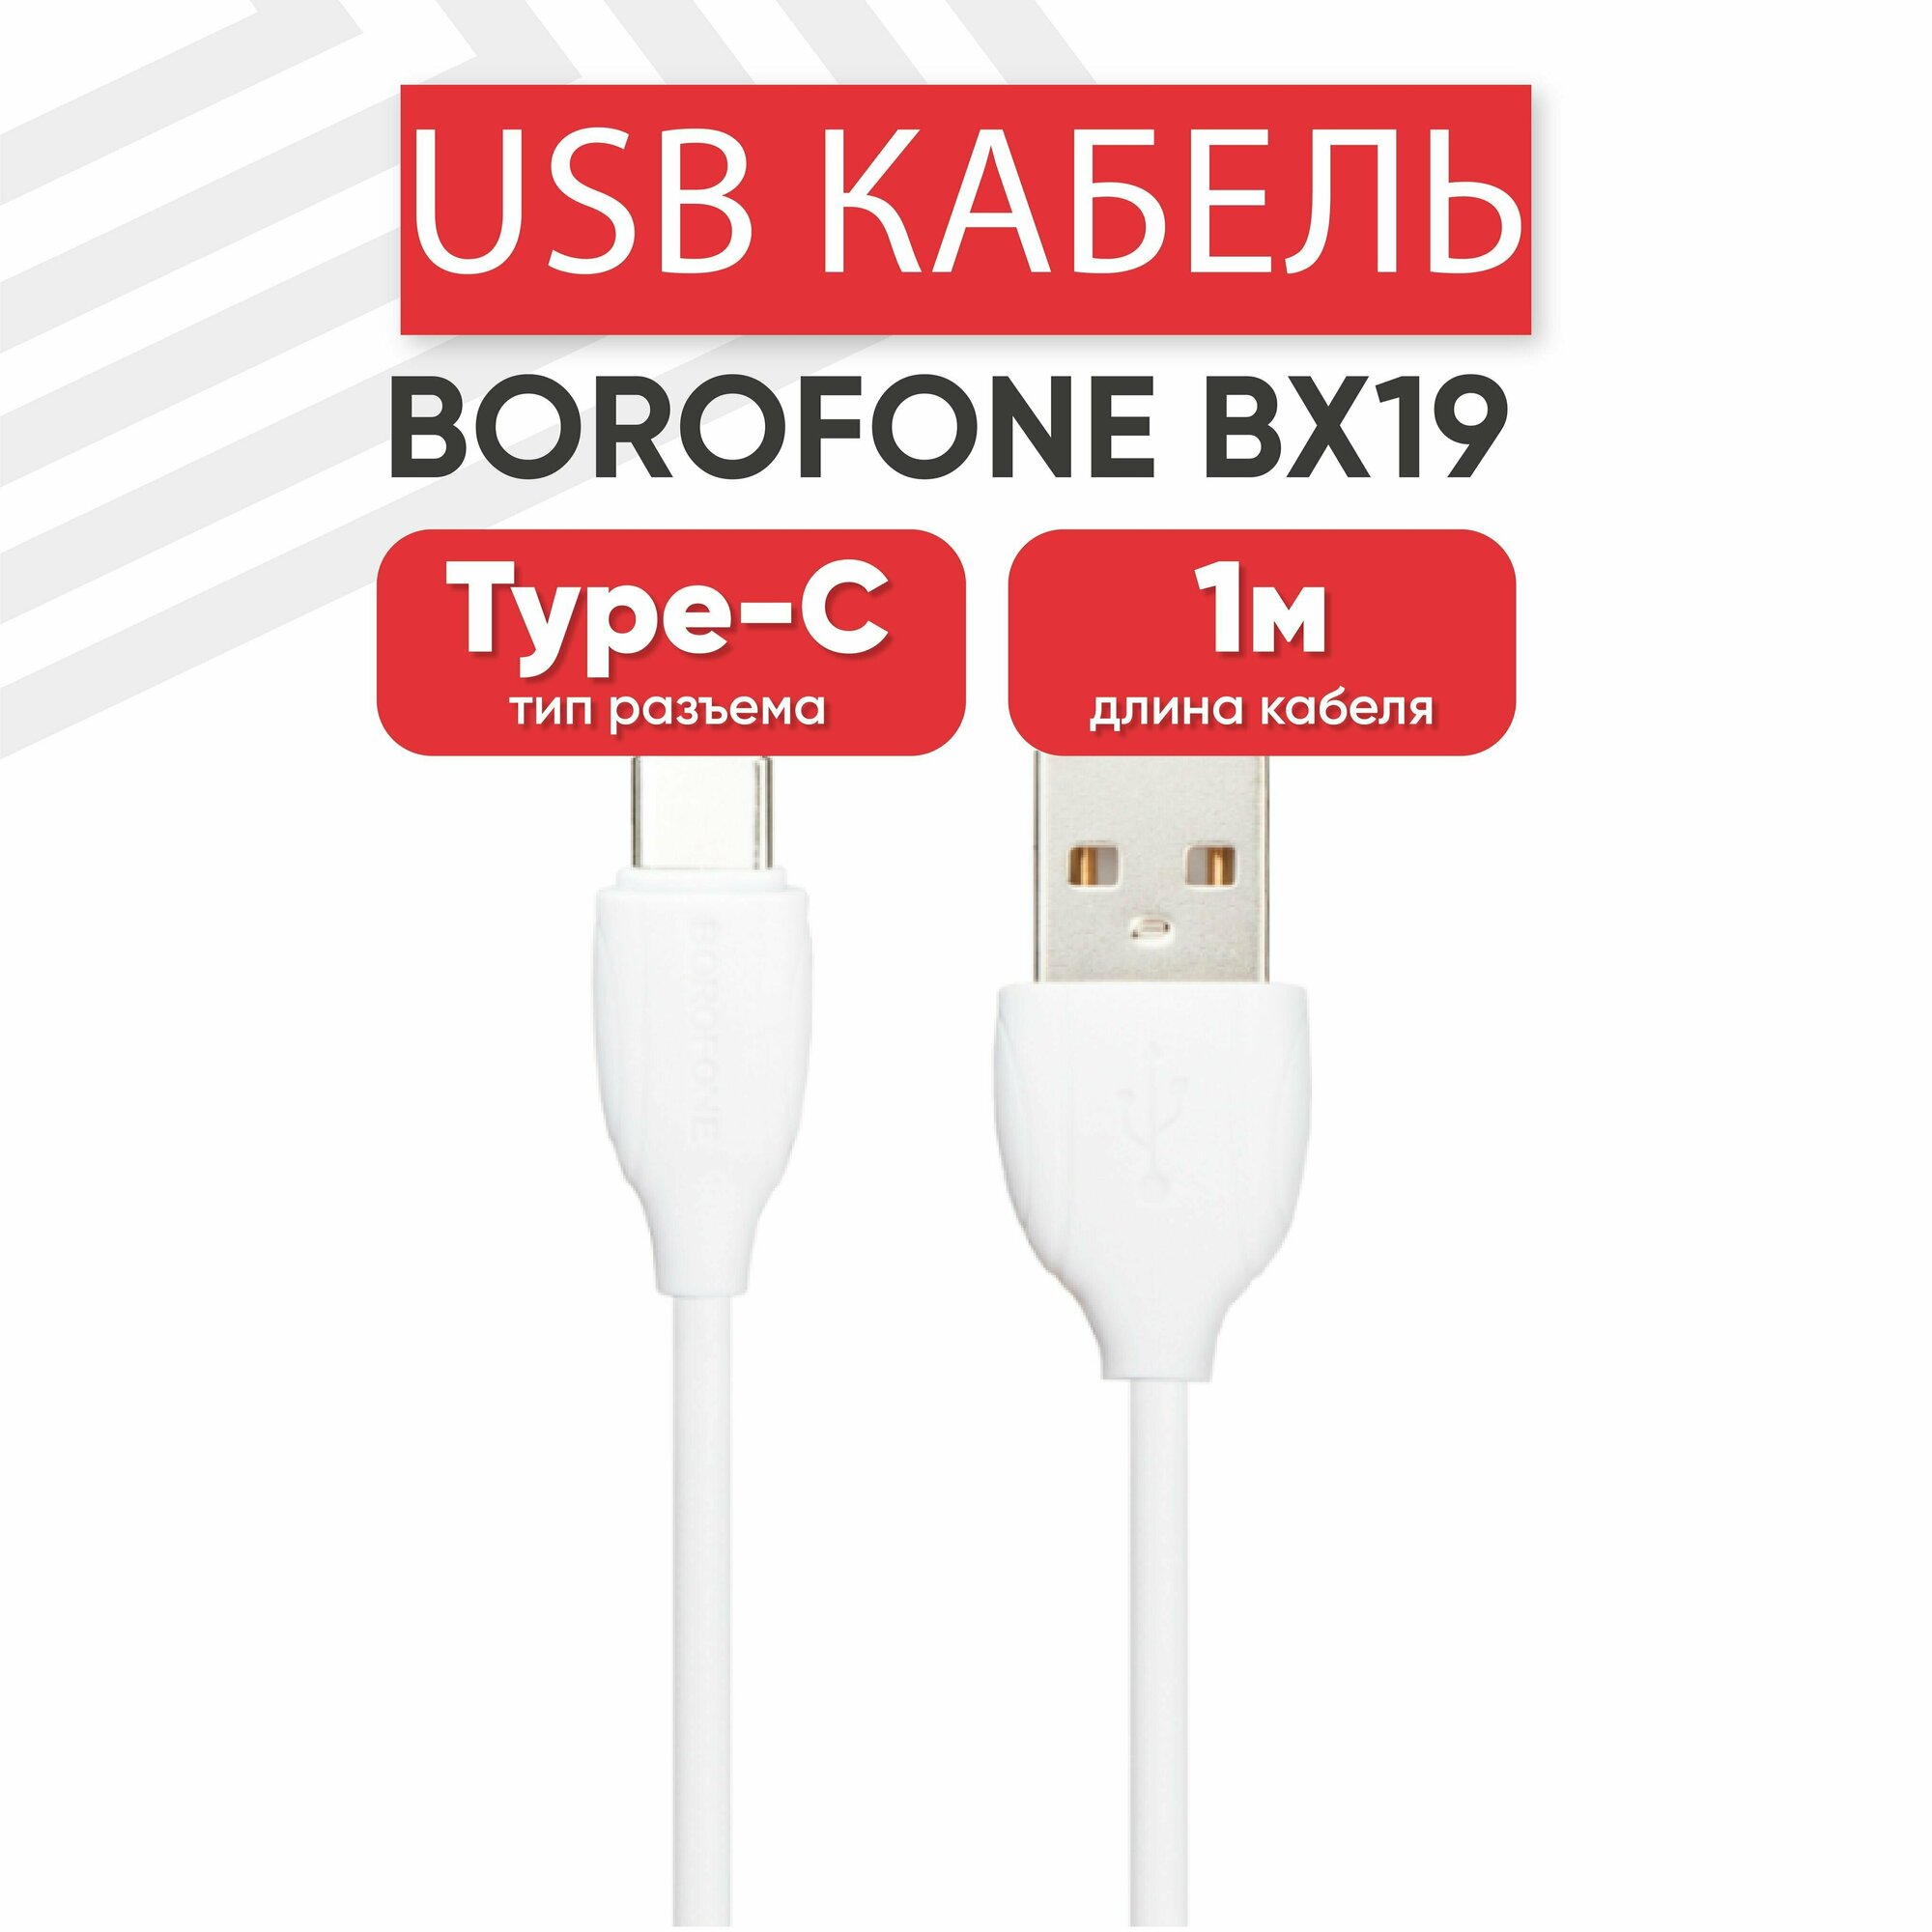 USB кабель Borofone BX19 для зарядки, передачи данных, Type-C, 3А, 1 метр, PVC, белый